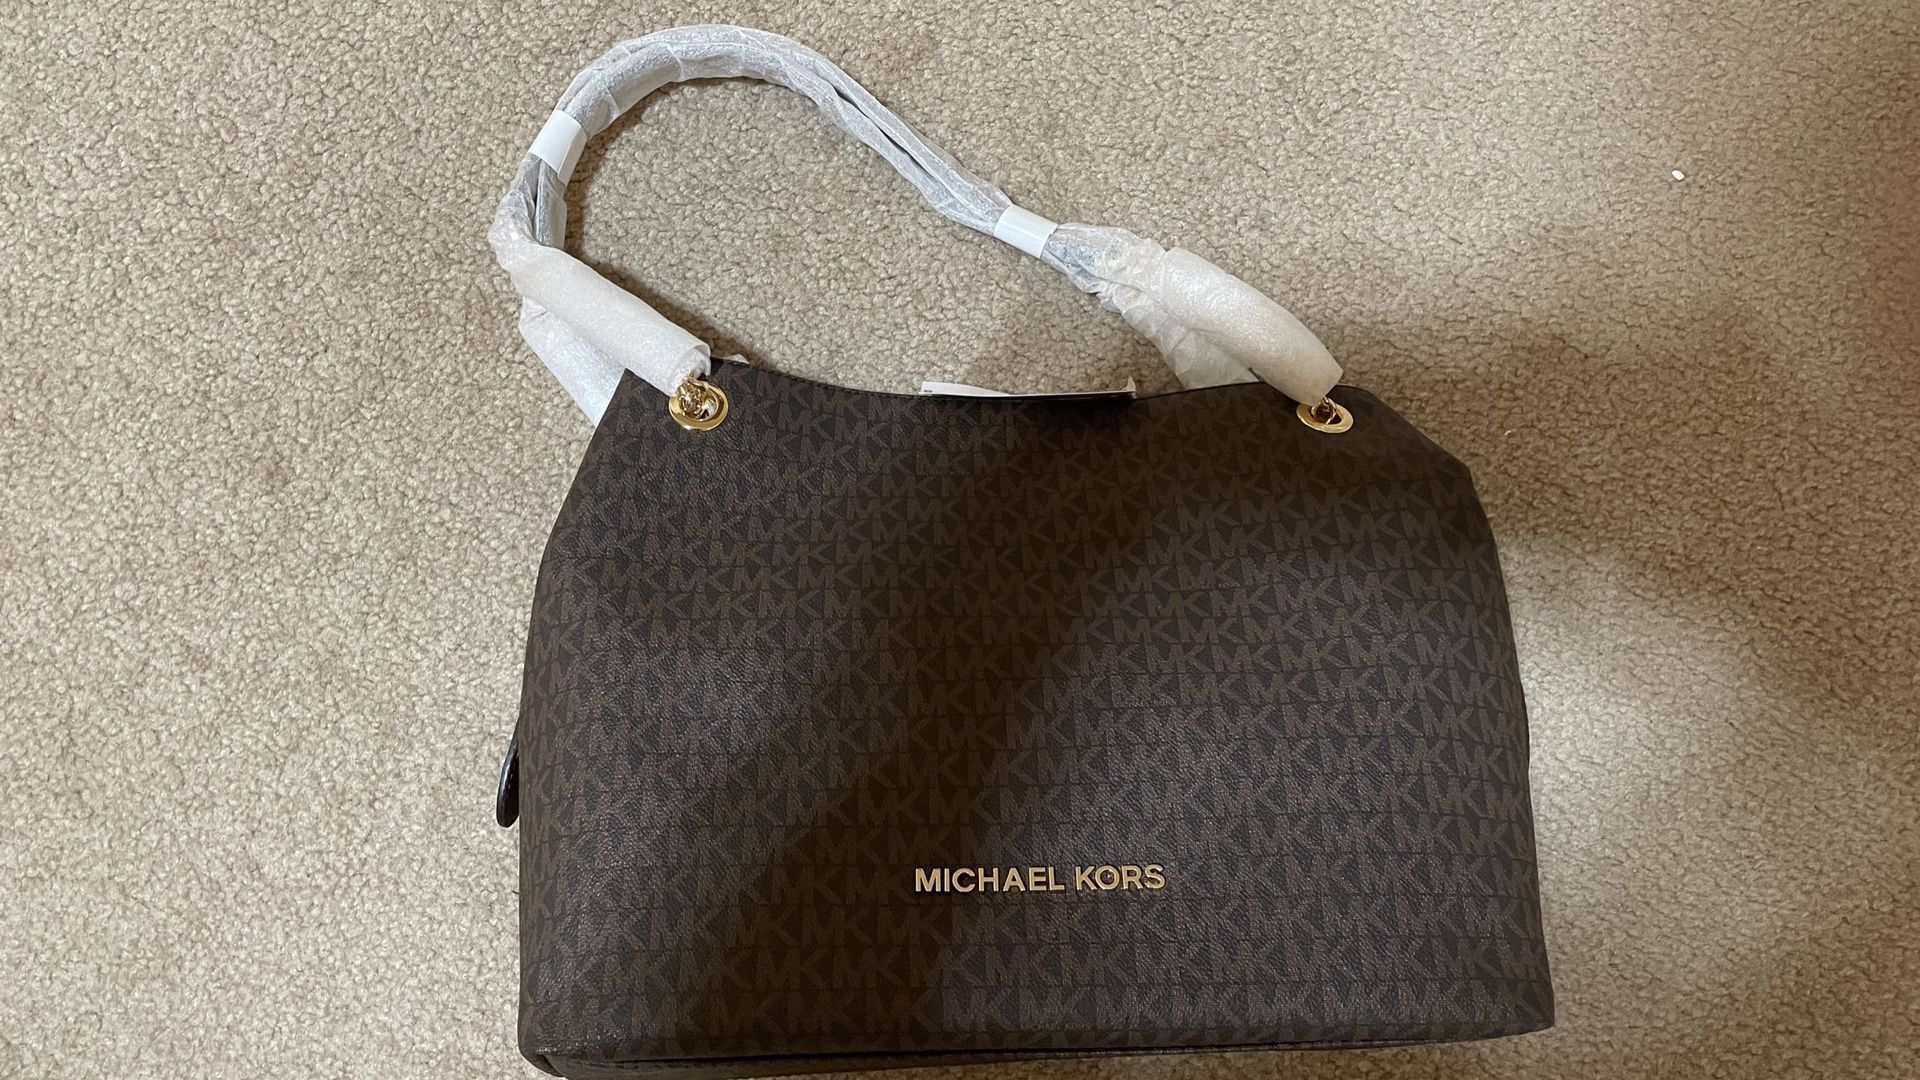 Michael Kors Brand New Bag For Sale